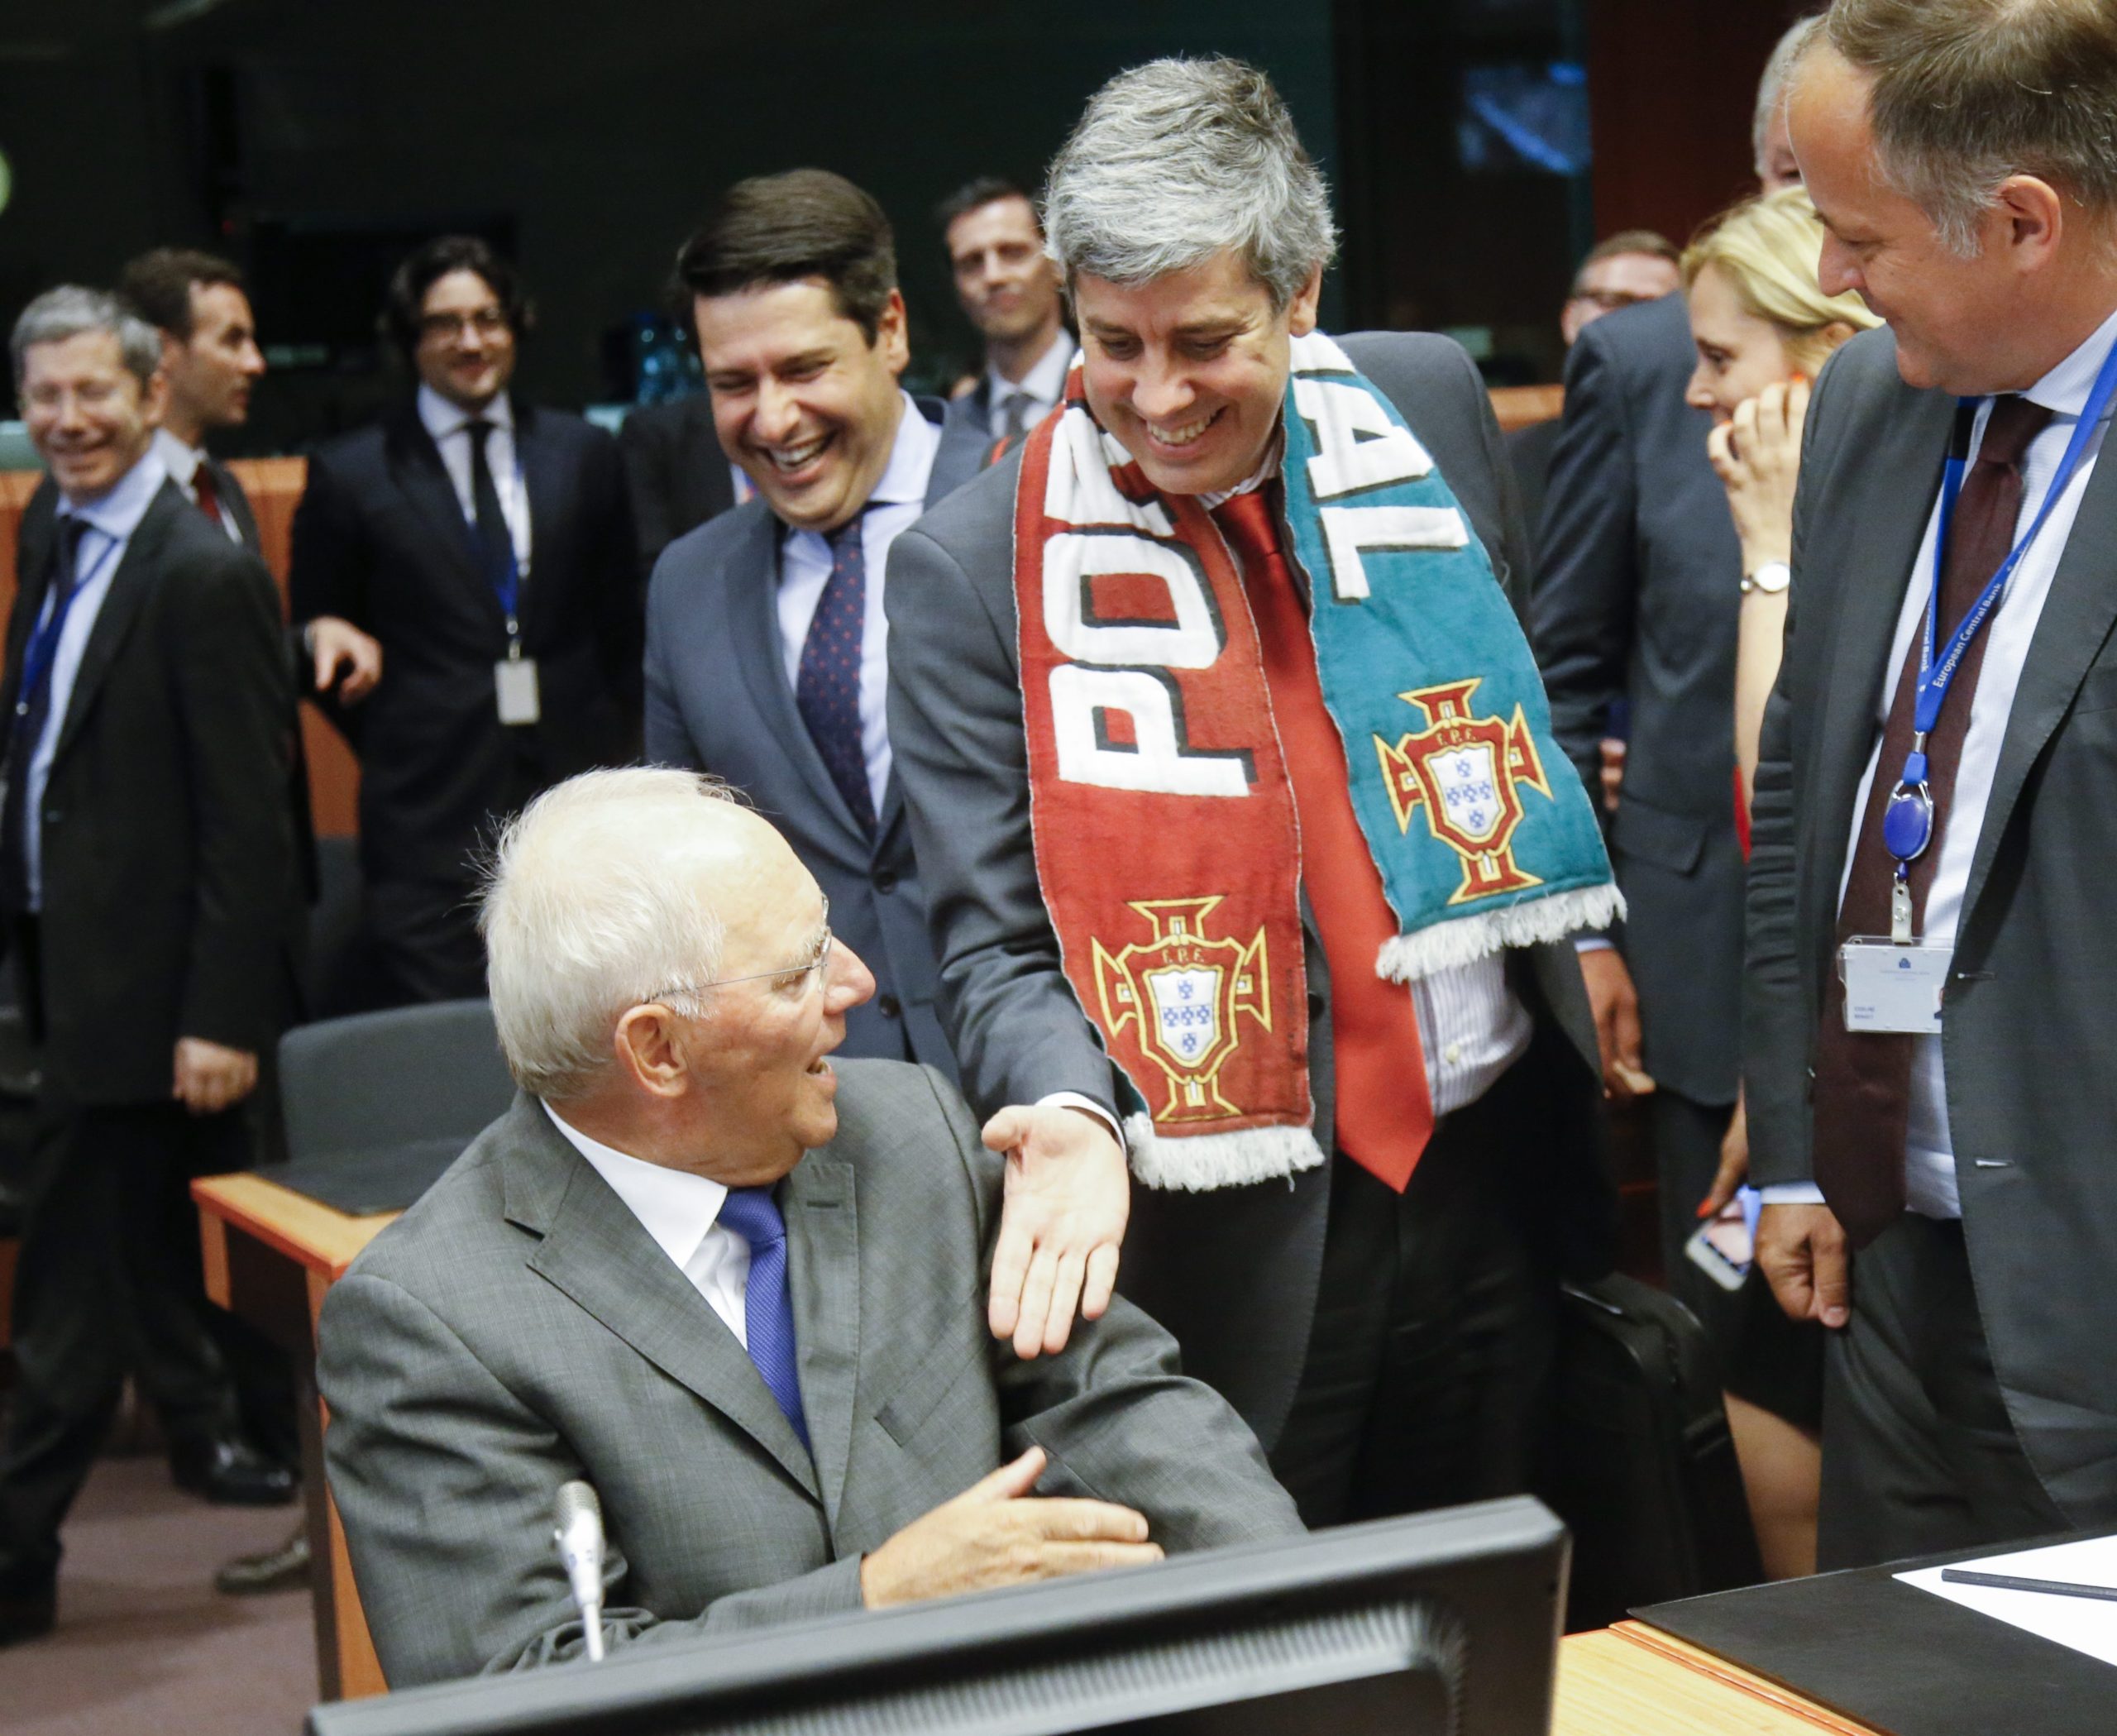 Με κασκόλ της Εθνικής του Ομάδας ο Πορτογάλος ΥΠΟΙΚ στο Eurogroup – ΦΩΤΟ